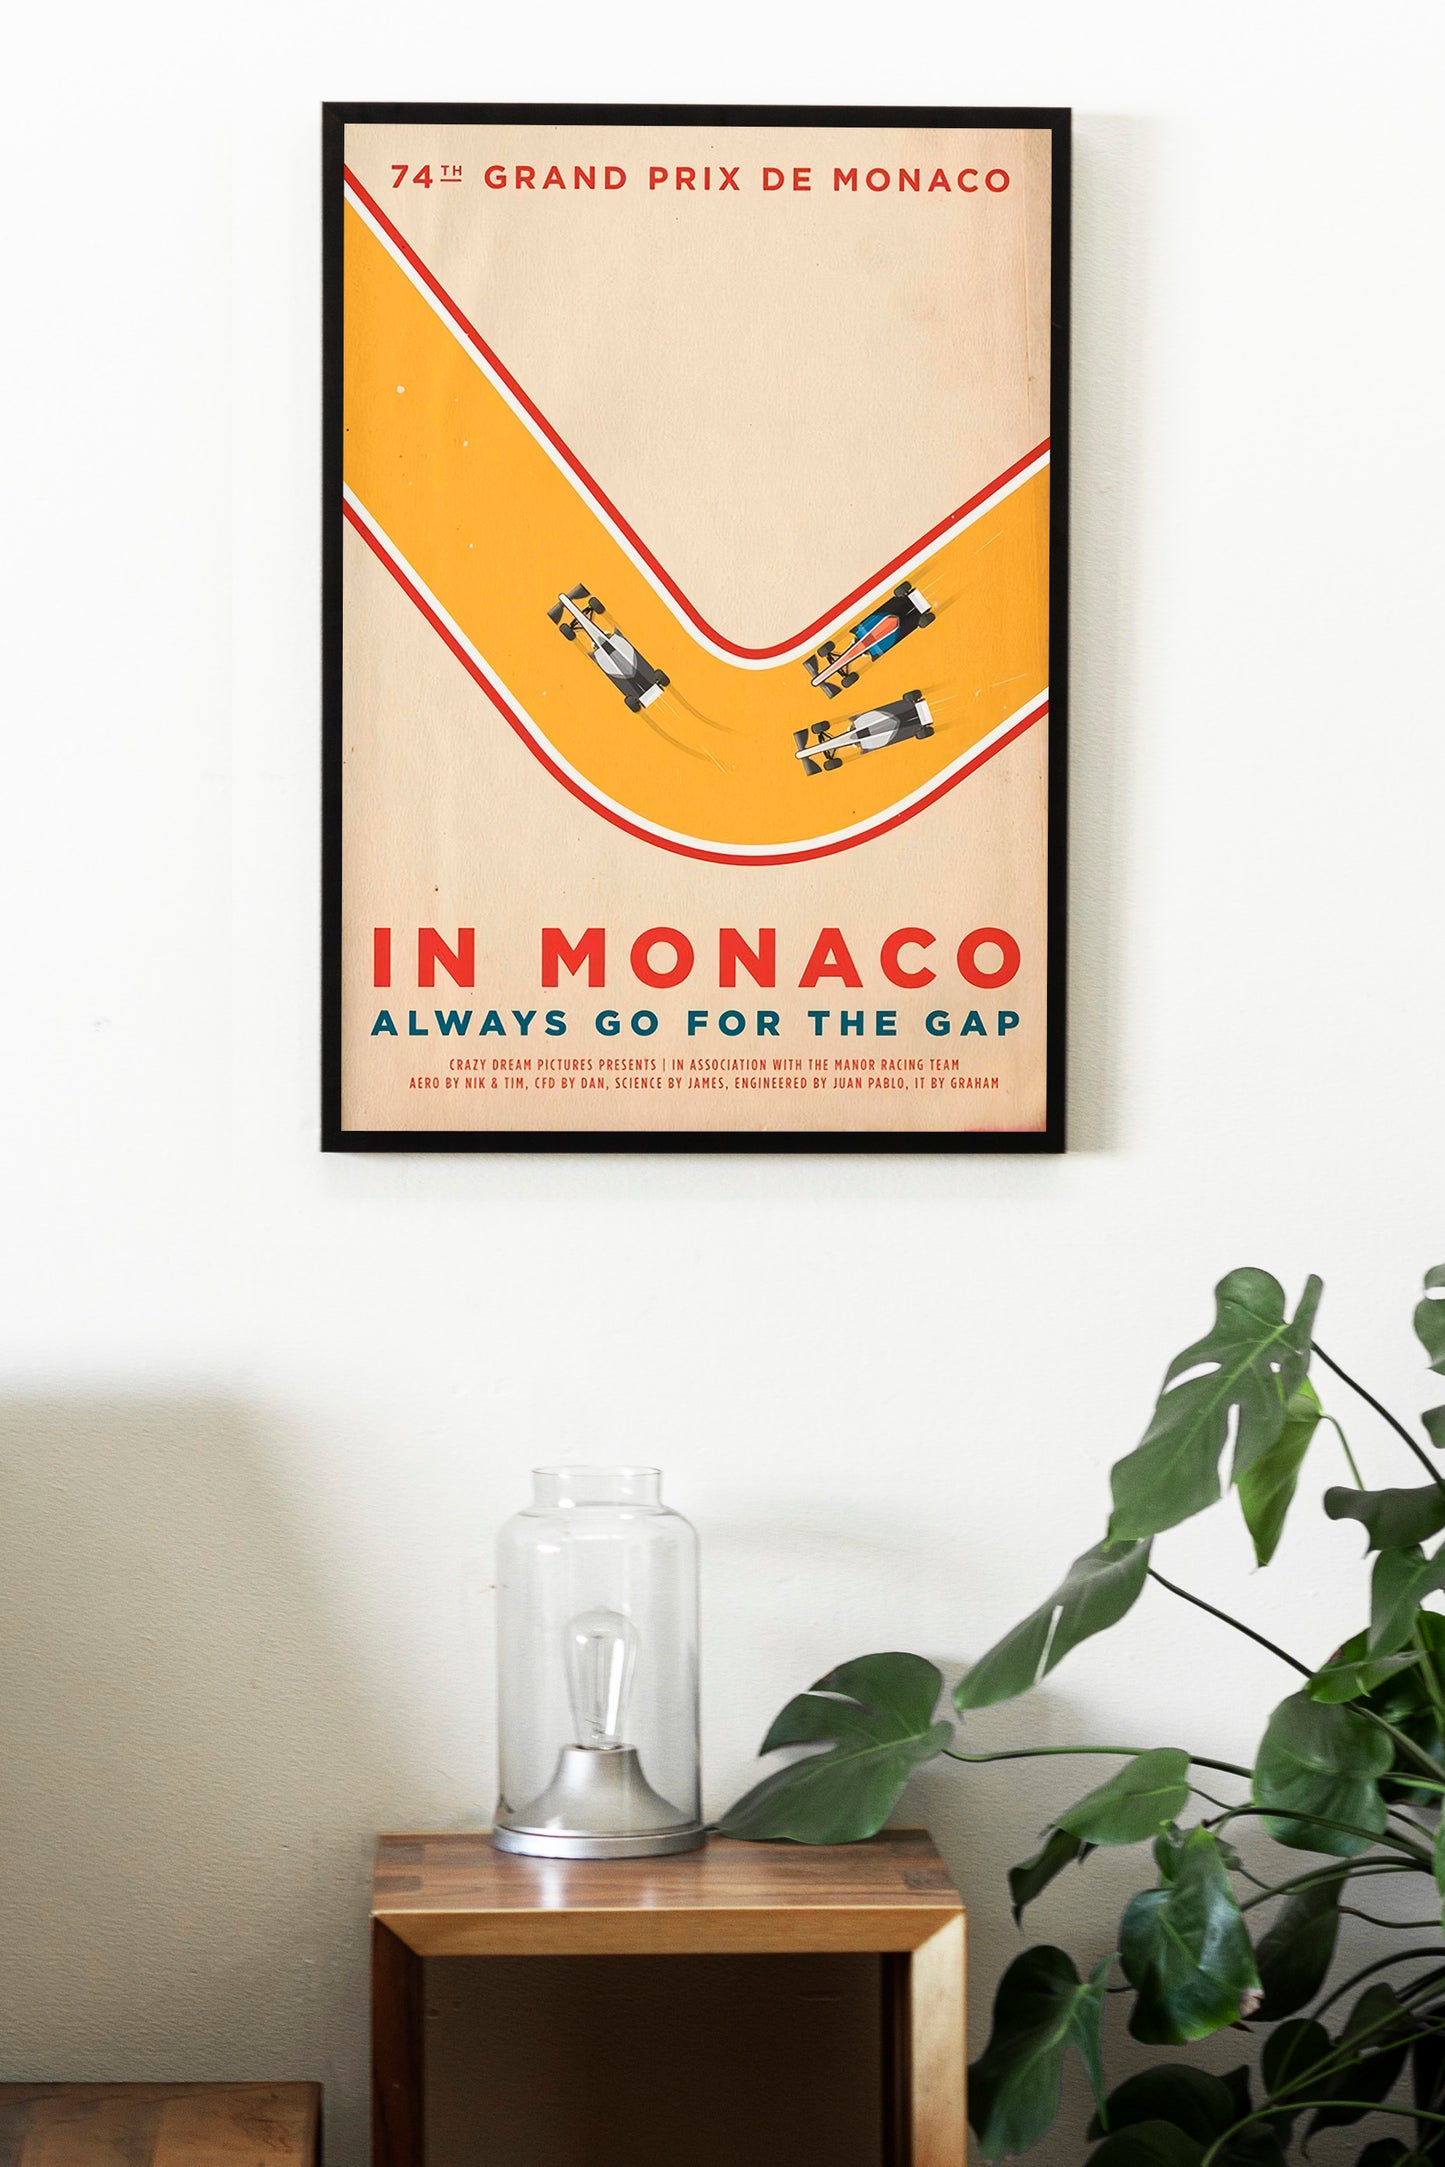 Grand Prix of Monaco Formula 1 Poster